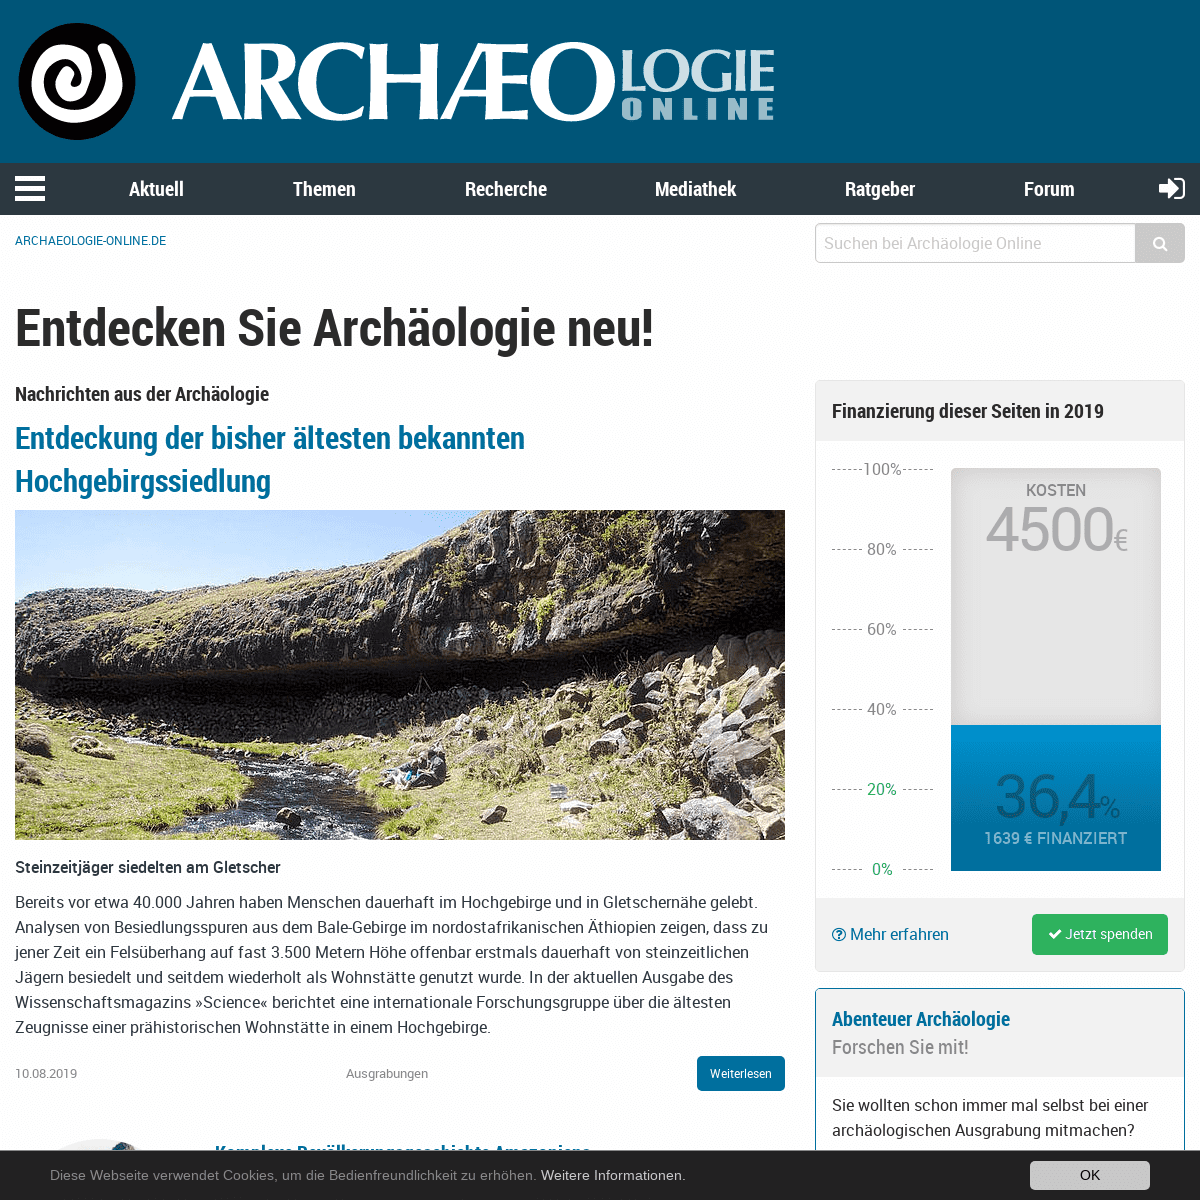 Archäologie neu entdecken @ Archäologie Online